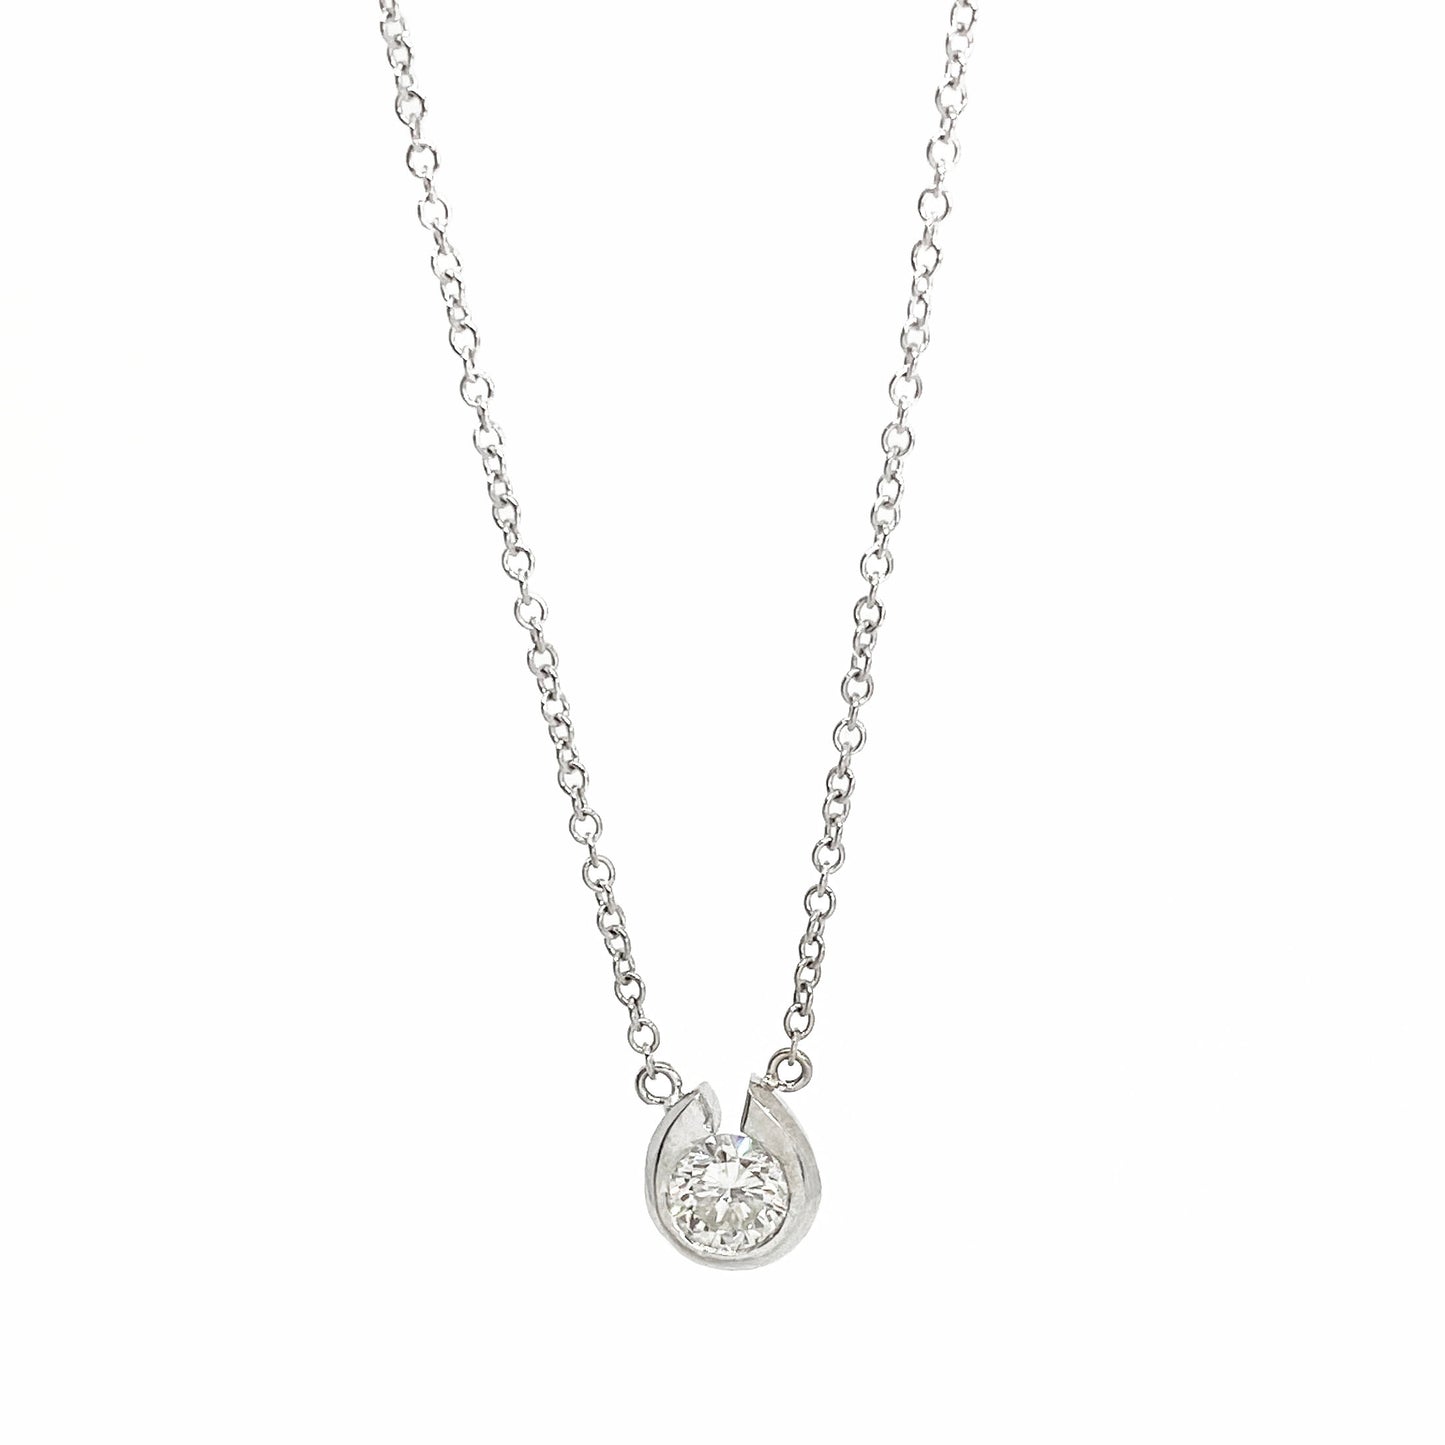 14kw Solitaire Diamond Necklace 0.25ct - eklektic jewelry studio